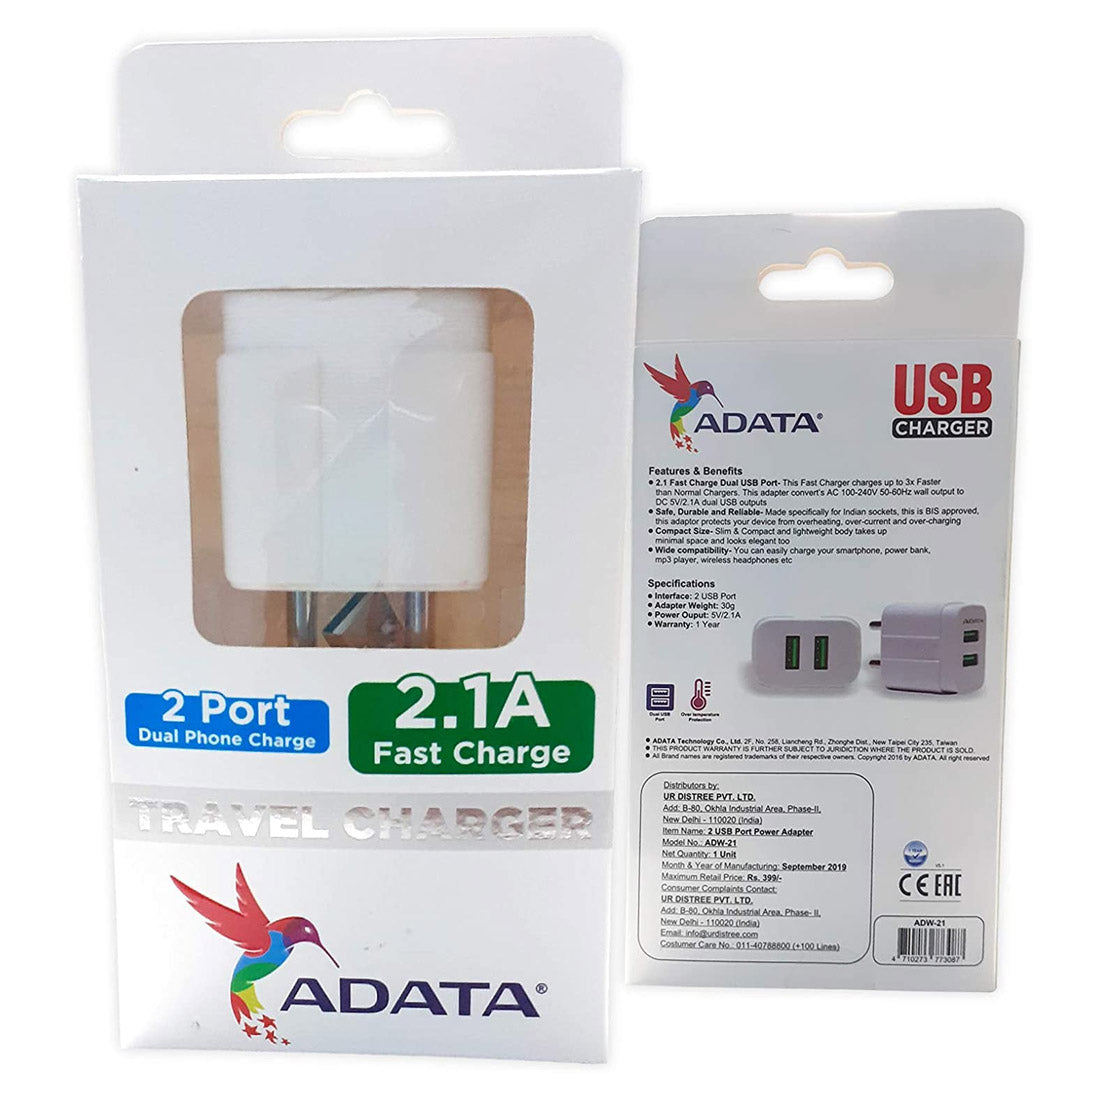 ADATA ADW-21 डुअल USB पोर्ट वॉल चार्जर 2.1A फास्ट चार्जिंग और इंटेलिजेंट चार्जिंग टेक्नोलॉजी के साथ